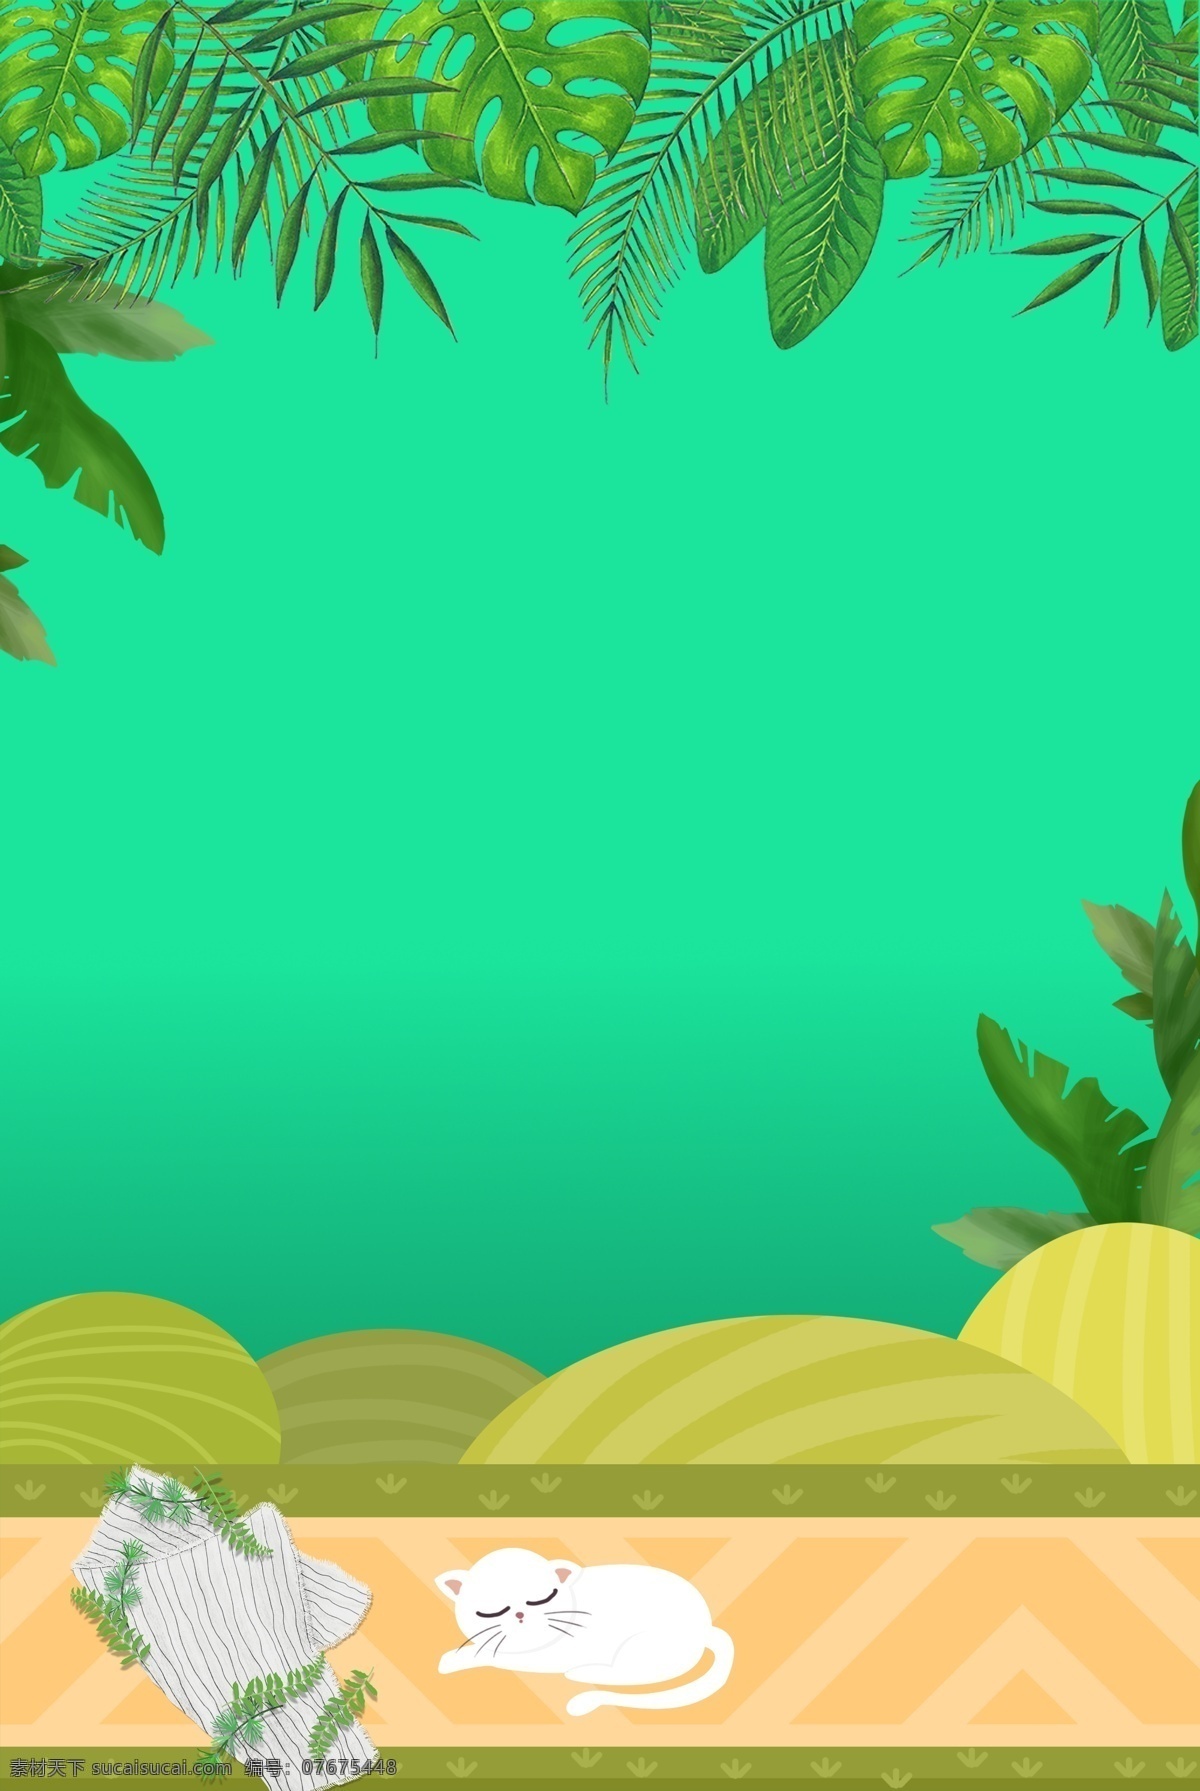 夏季 绿叶 绿色 文艺 海报 banner 背景 海滩 绿色背景 psd源文件 淘宝 天猫 叶子 树木 开心